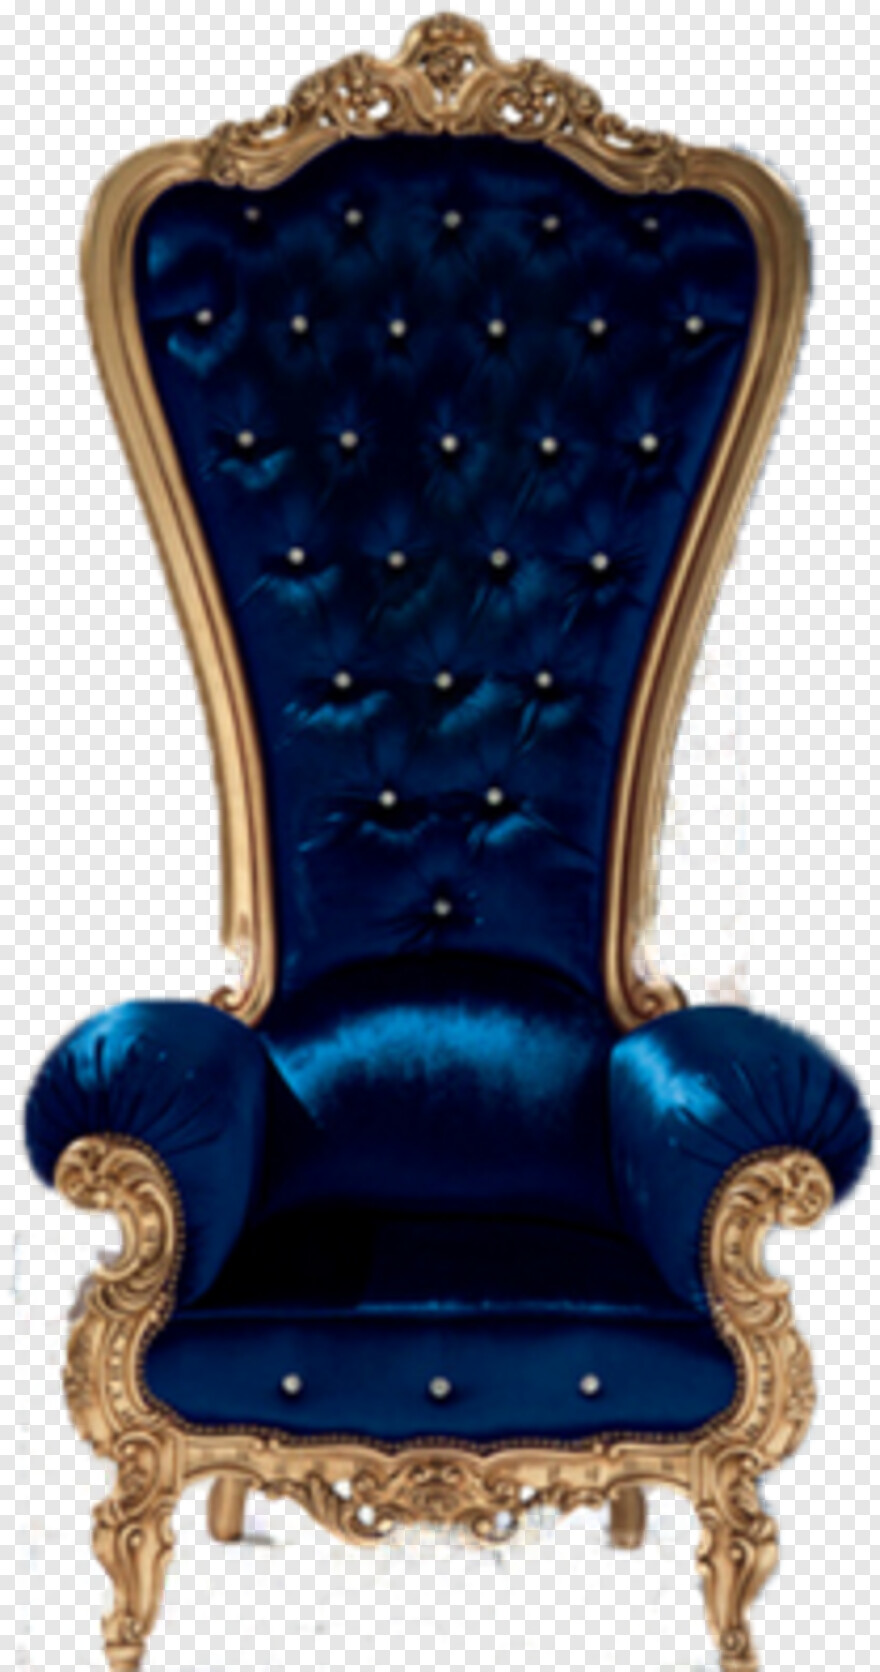  Person Sitting In Chair, Folding Chair, Chair, King Chair, Beach Chair, King Throne